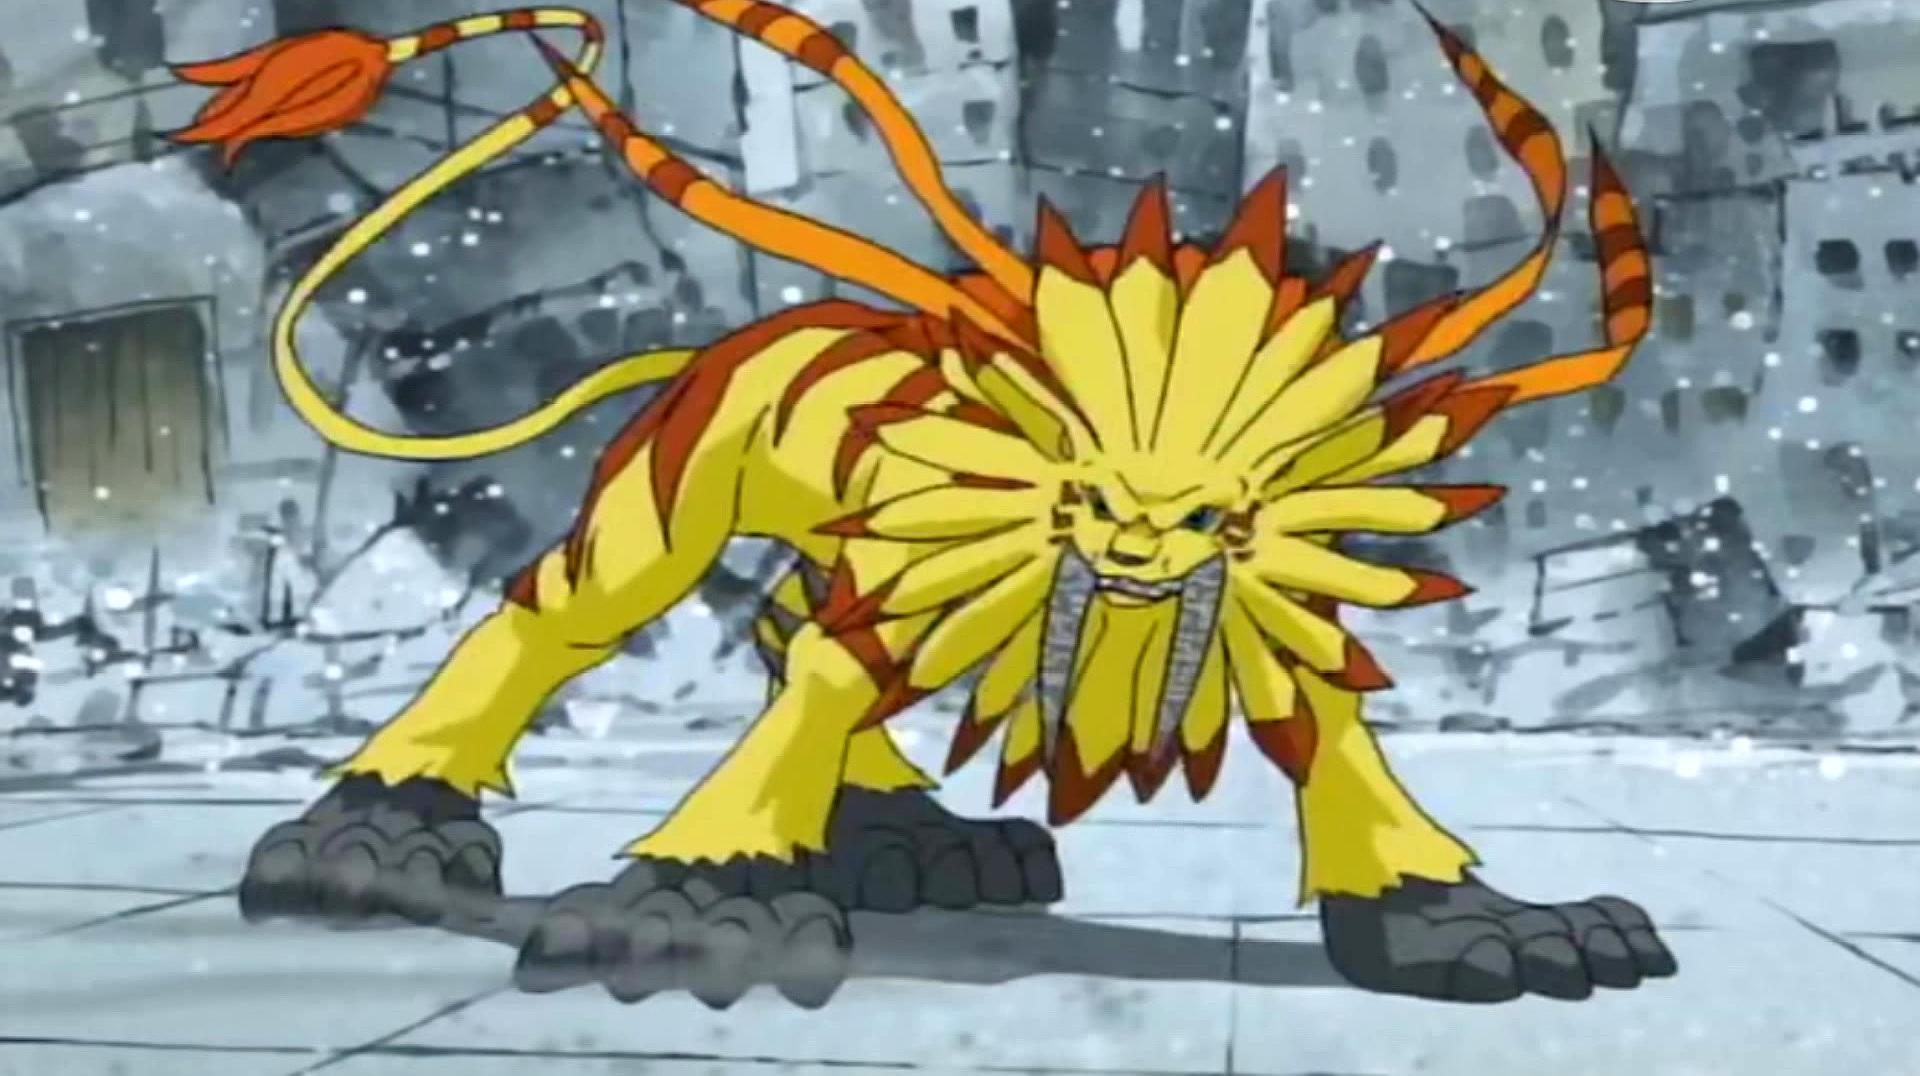 钢铁悟空兽找到孩子,狮子兽果断究极进化,成为黄金剑狮兽